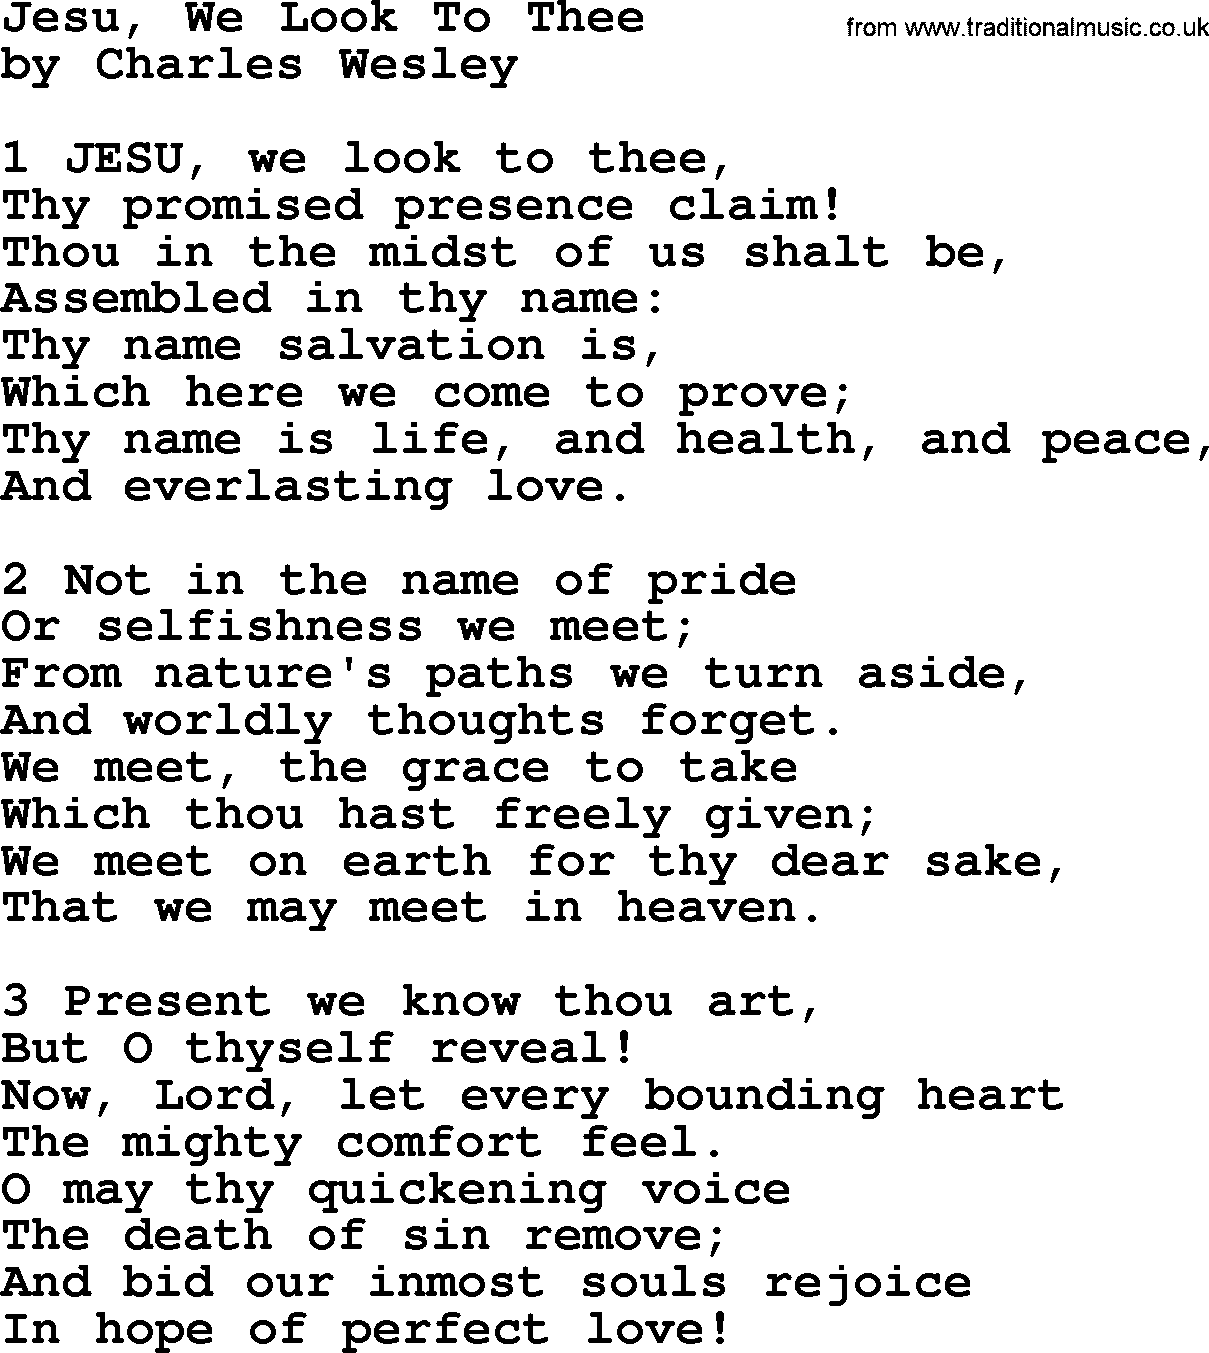 Charles Wesley hymn: Jesu, We Look To Thee, lyrics